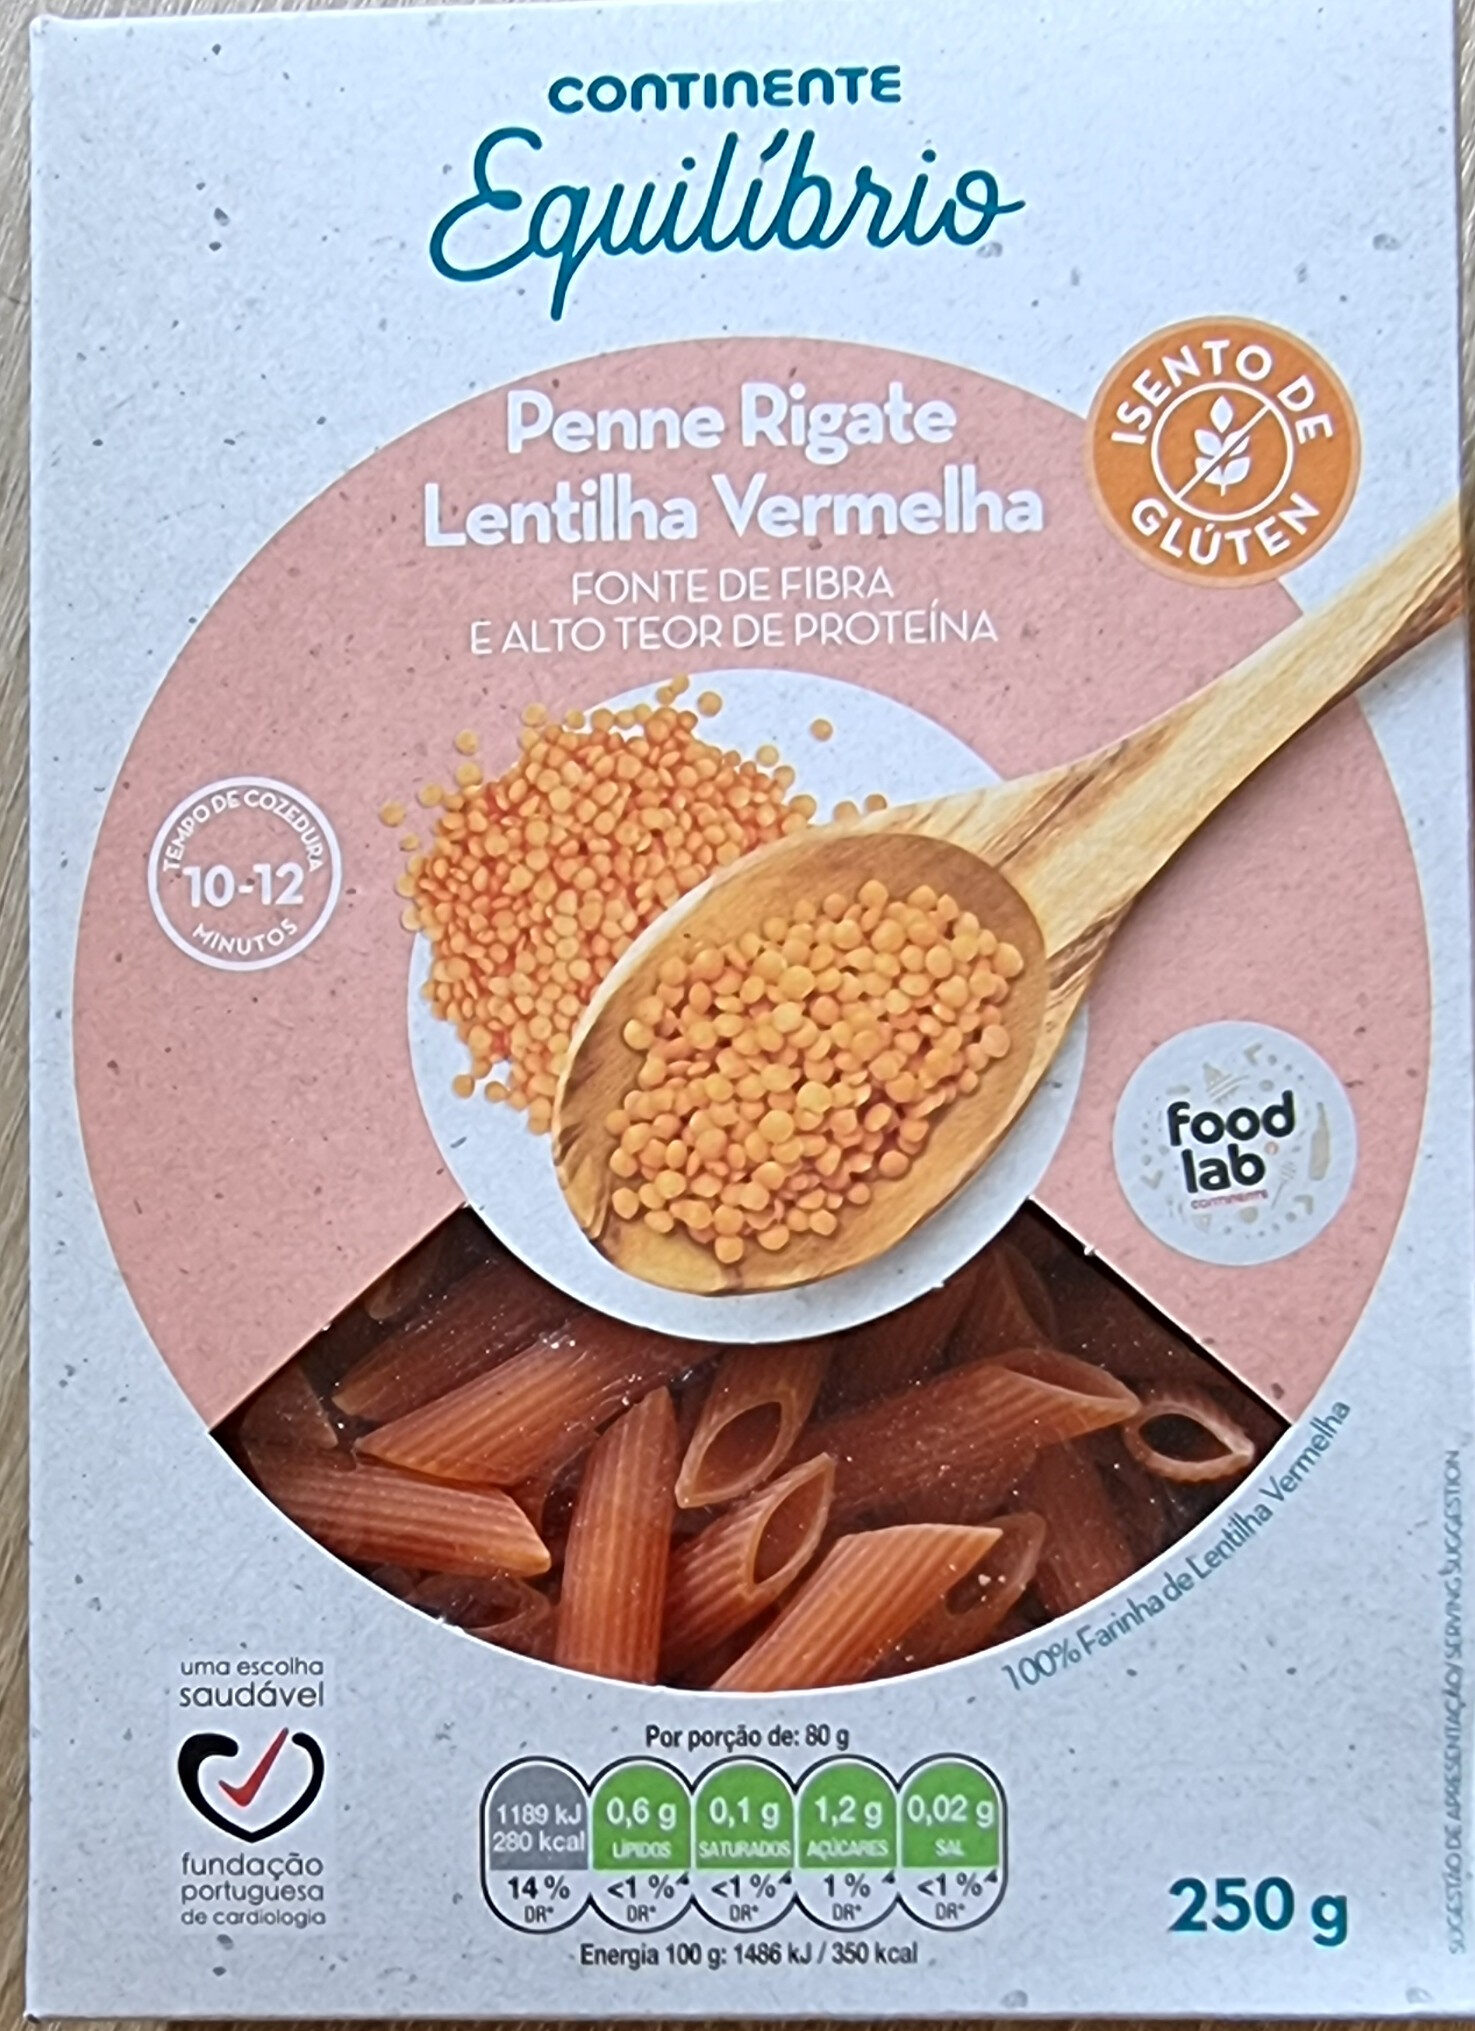 Penne Rigate Lentilha Vermelha - Produkt - pt